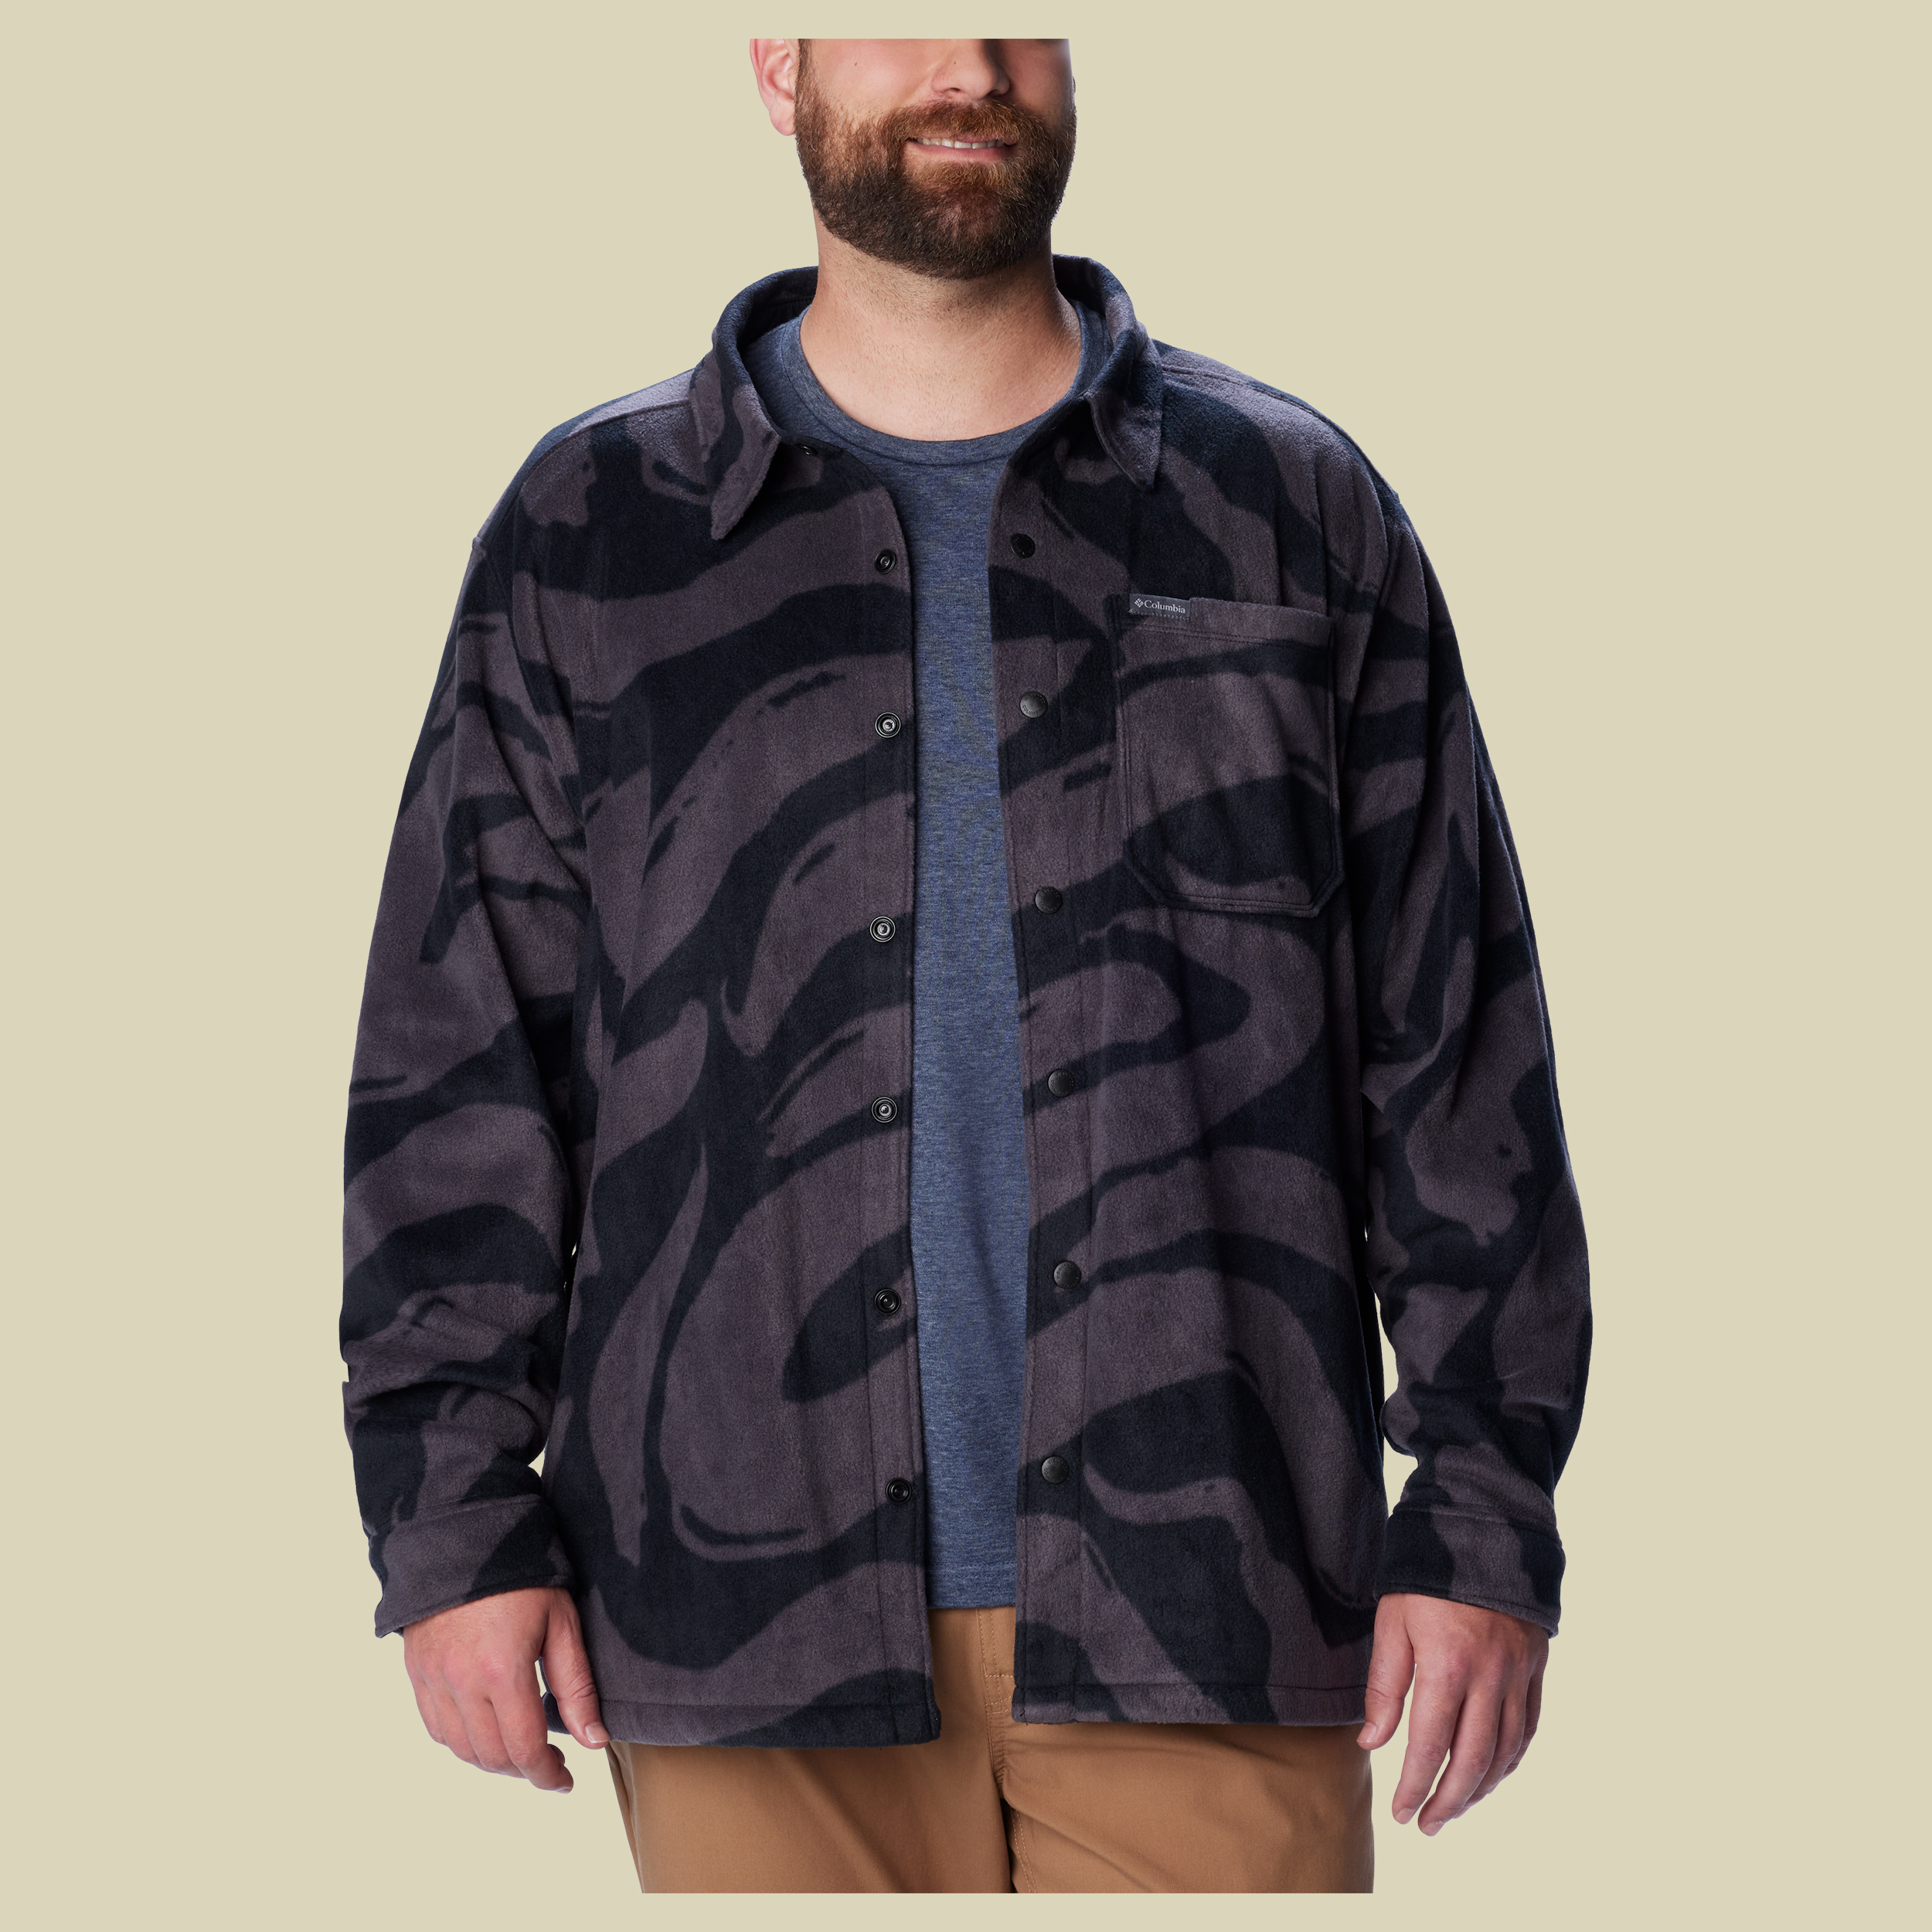 Steens Mountain Printed Jacket Men Größe M  Farbe black snowdrift